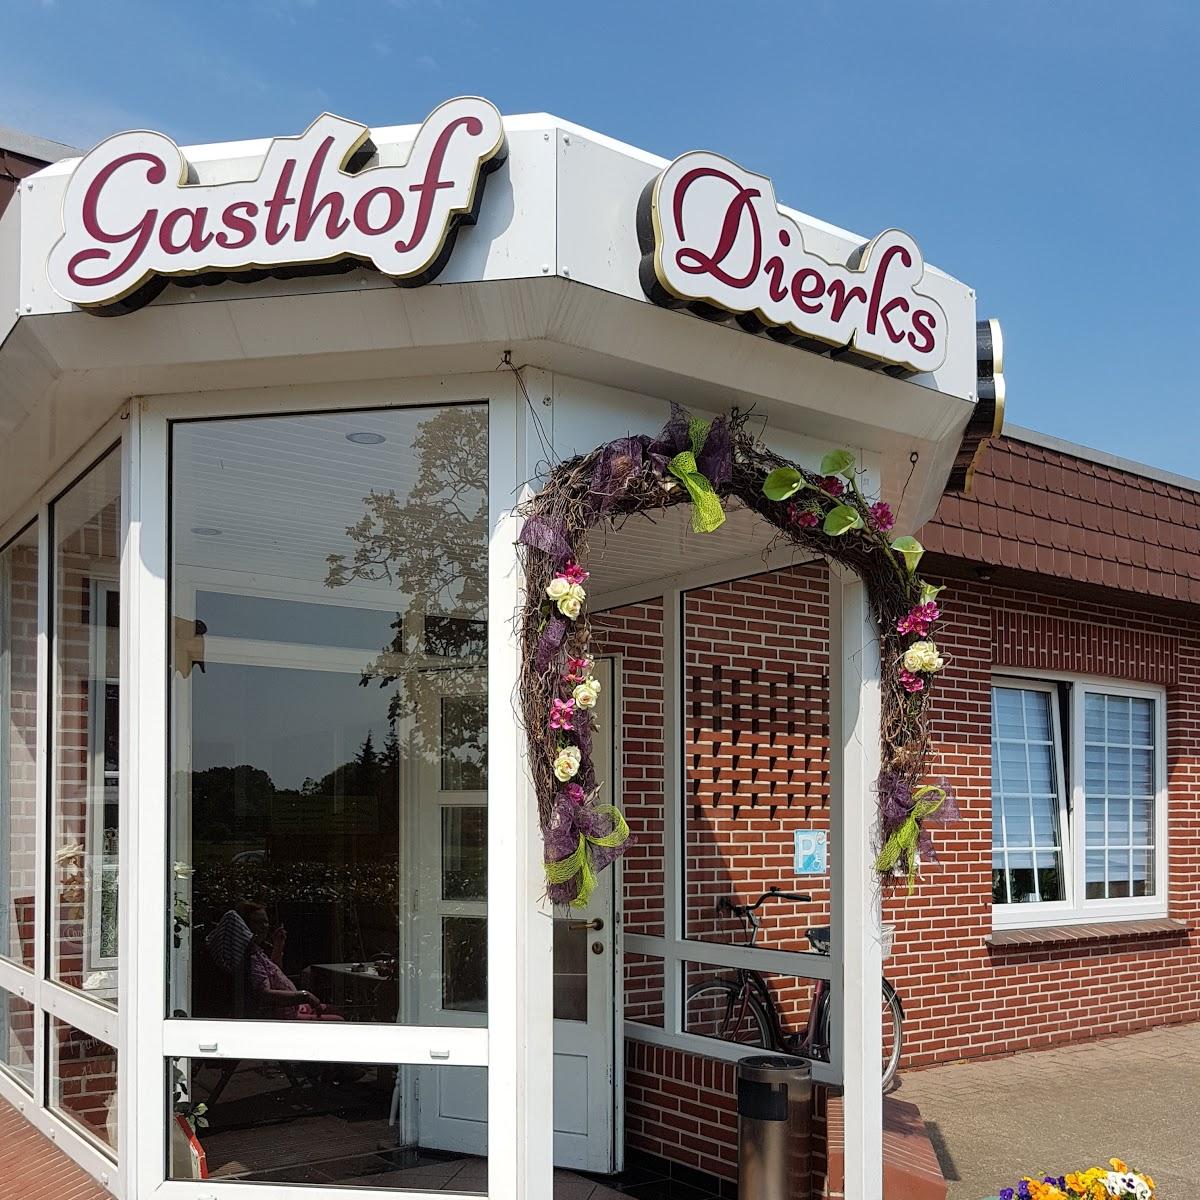 Restaurant "Gasthof Dierks" in Westerstede